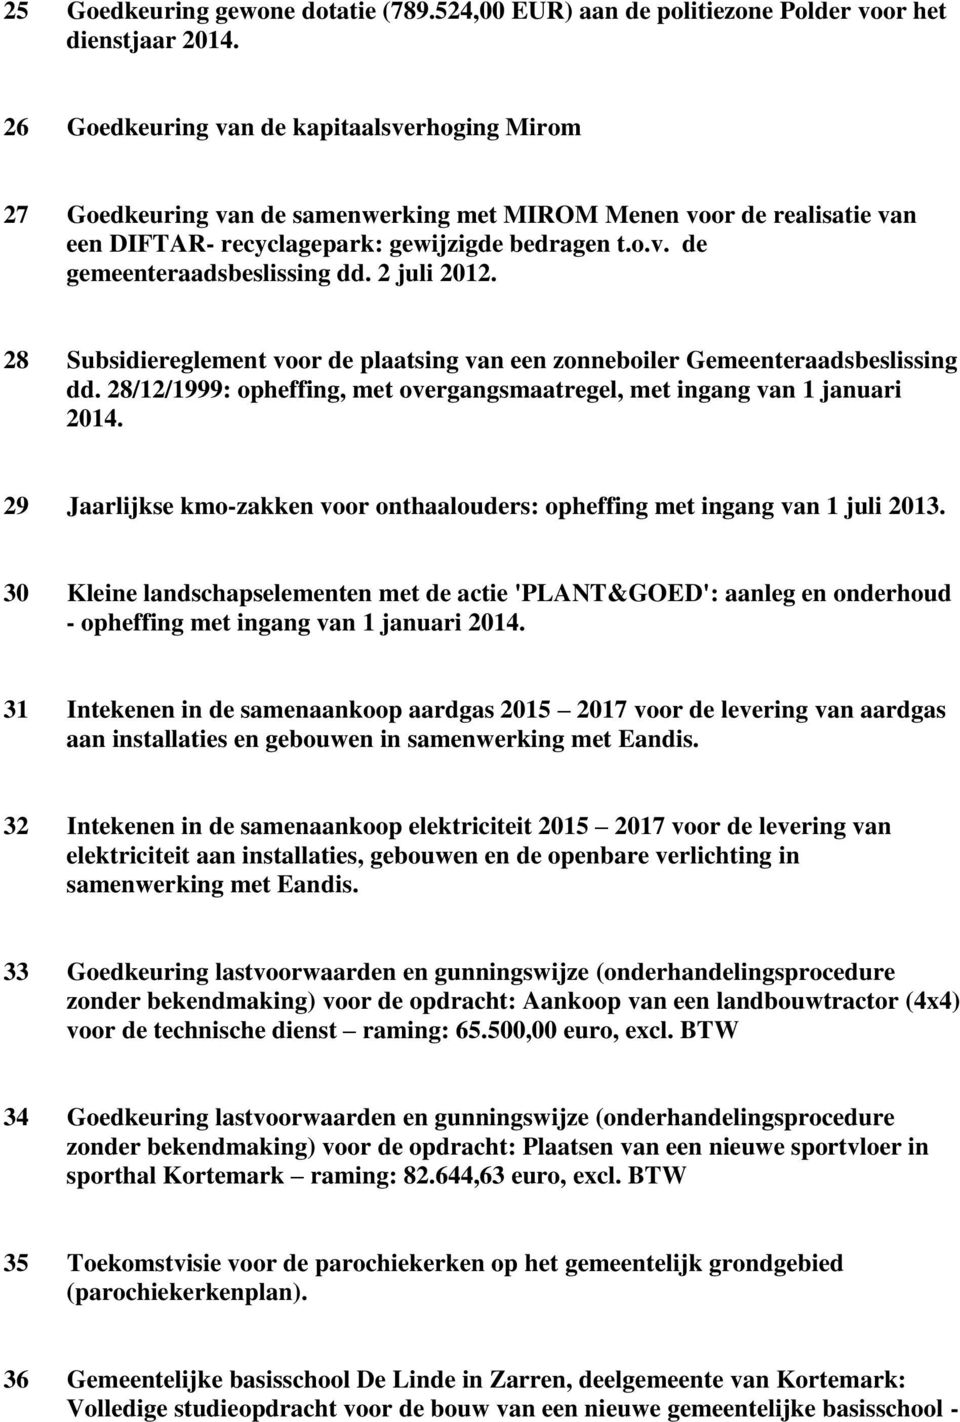 2 juli 2012. 28 Subsidiereglement voor de plaatsing van een zonneboiler Gemeenteraadsbeslissing dd. 28/12/1999: opheffing, met overgangsmaatregel, met ingang van 1 januari 2014.